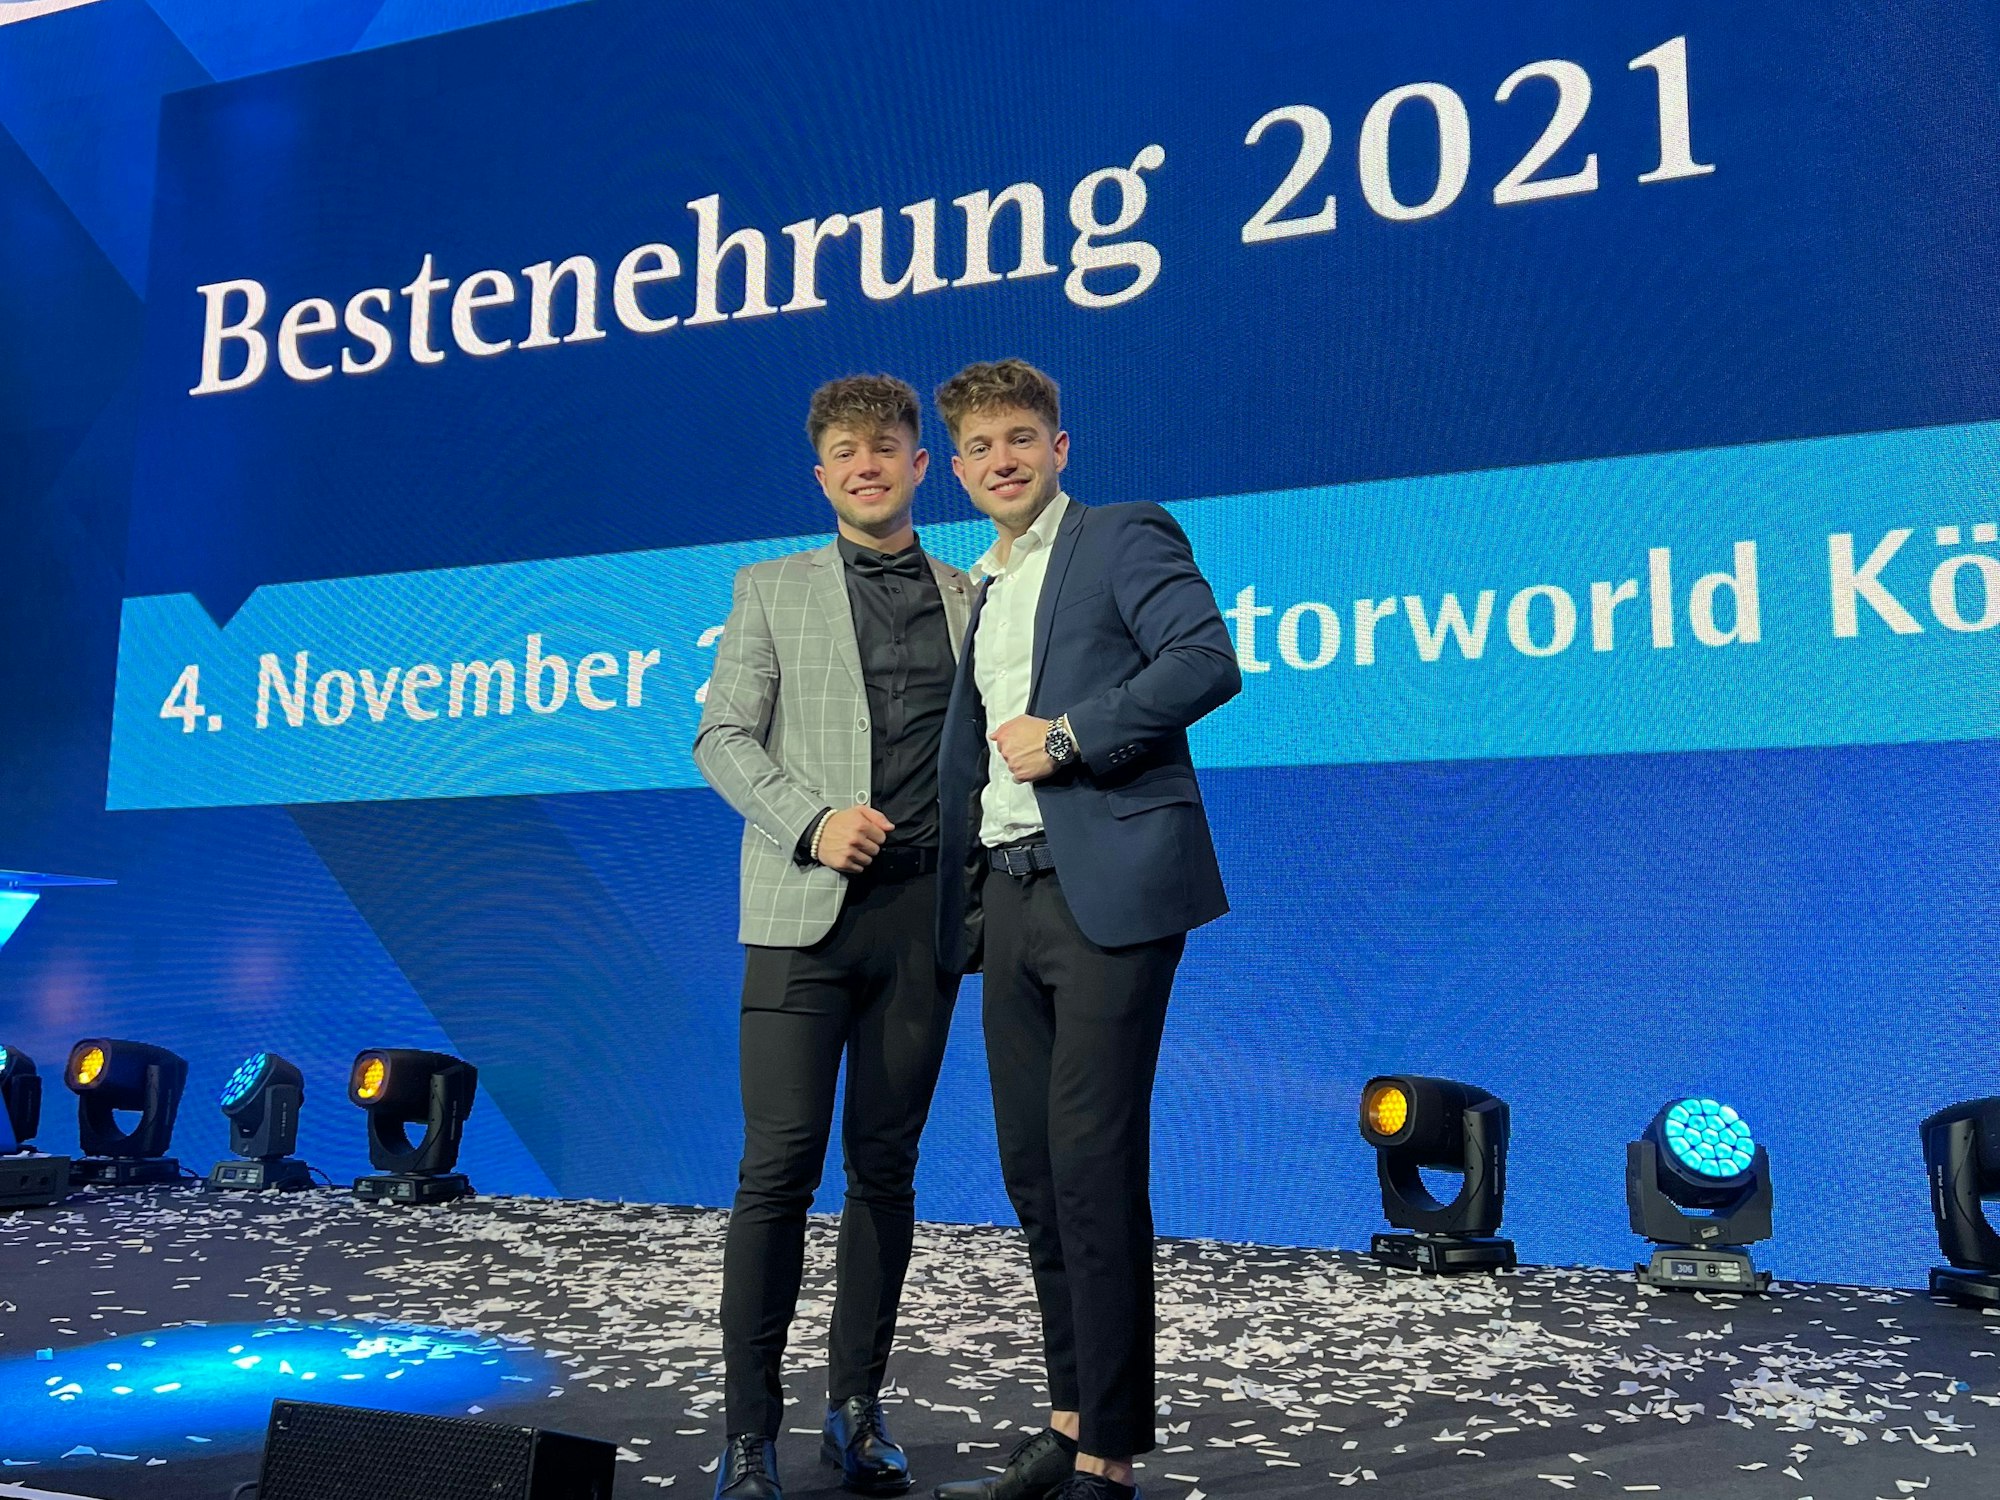 Roman und Nikita Kiselev stehen auf einer Bühne auf der Feier der Bestenehrung der IHK Köln am 4. November 2021.